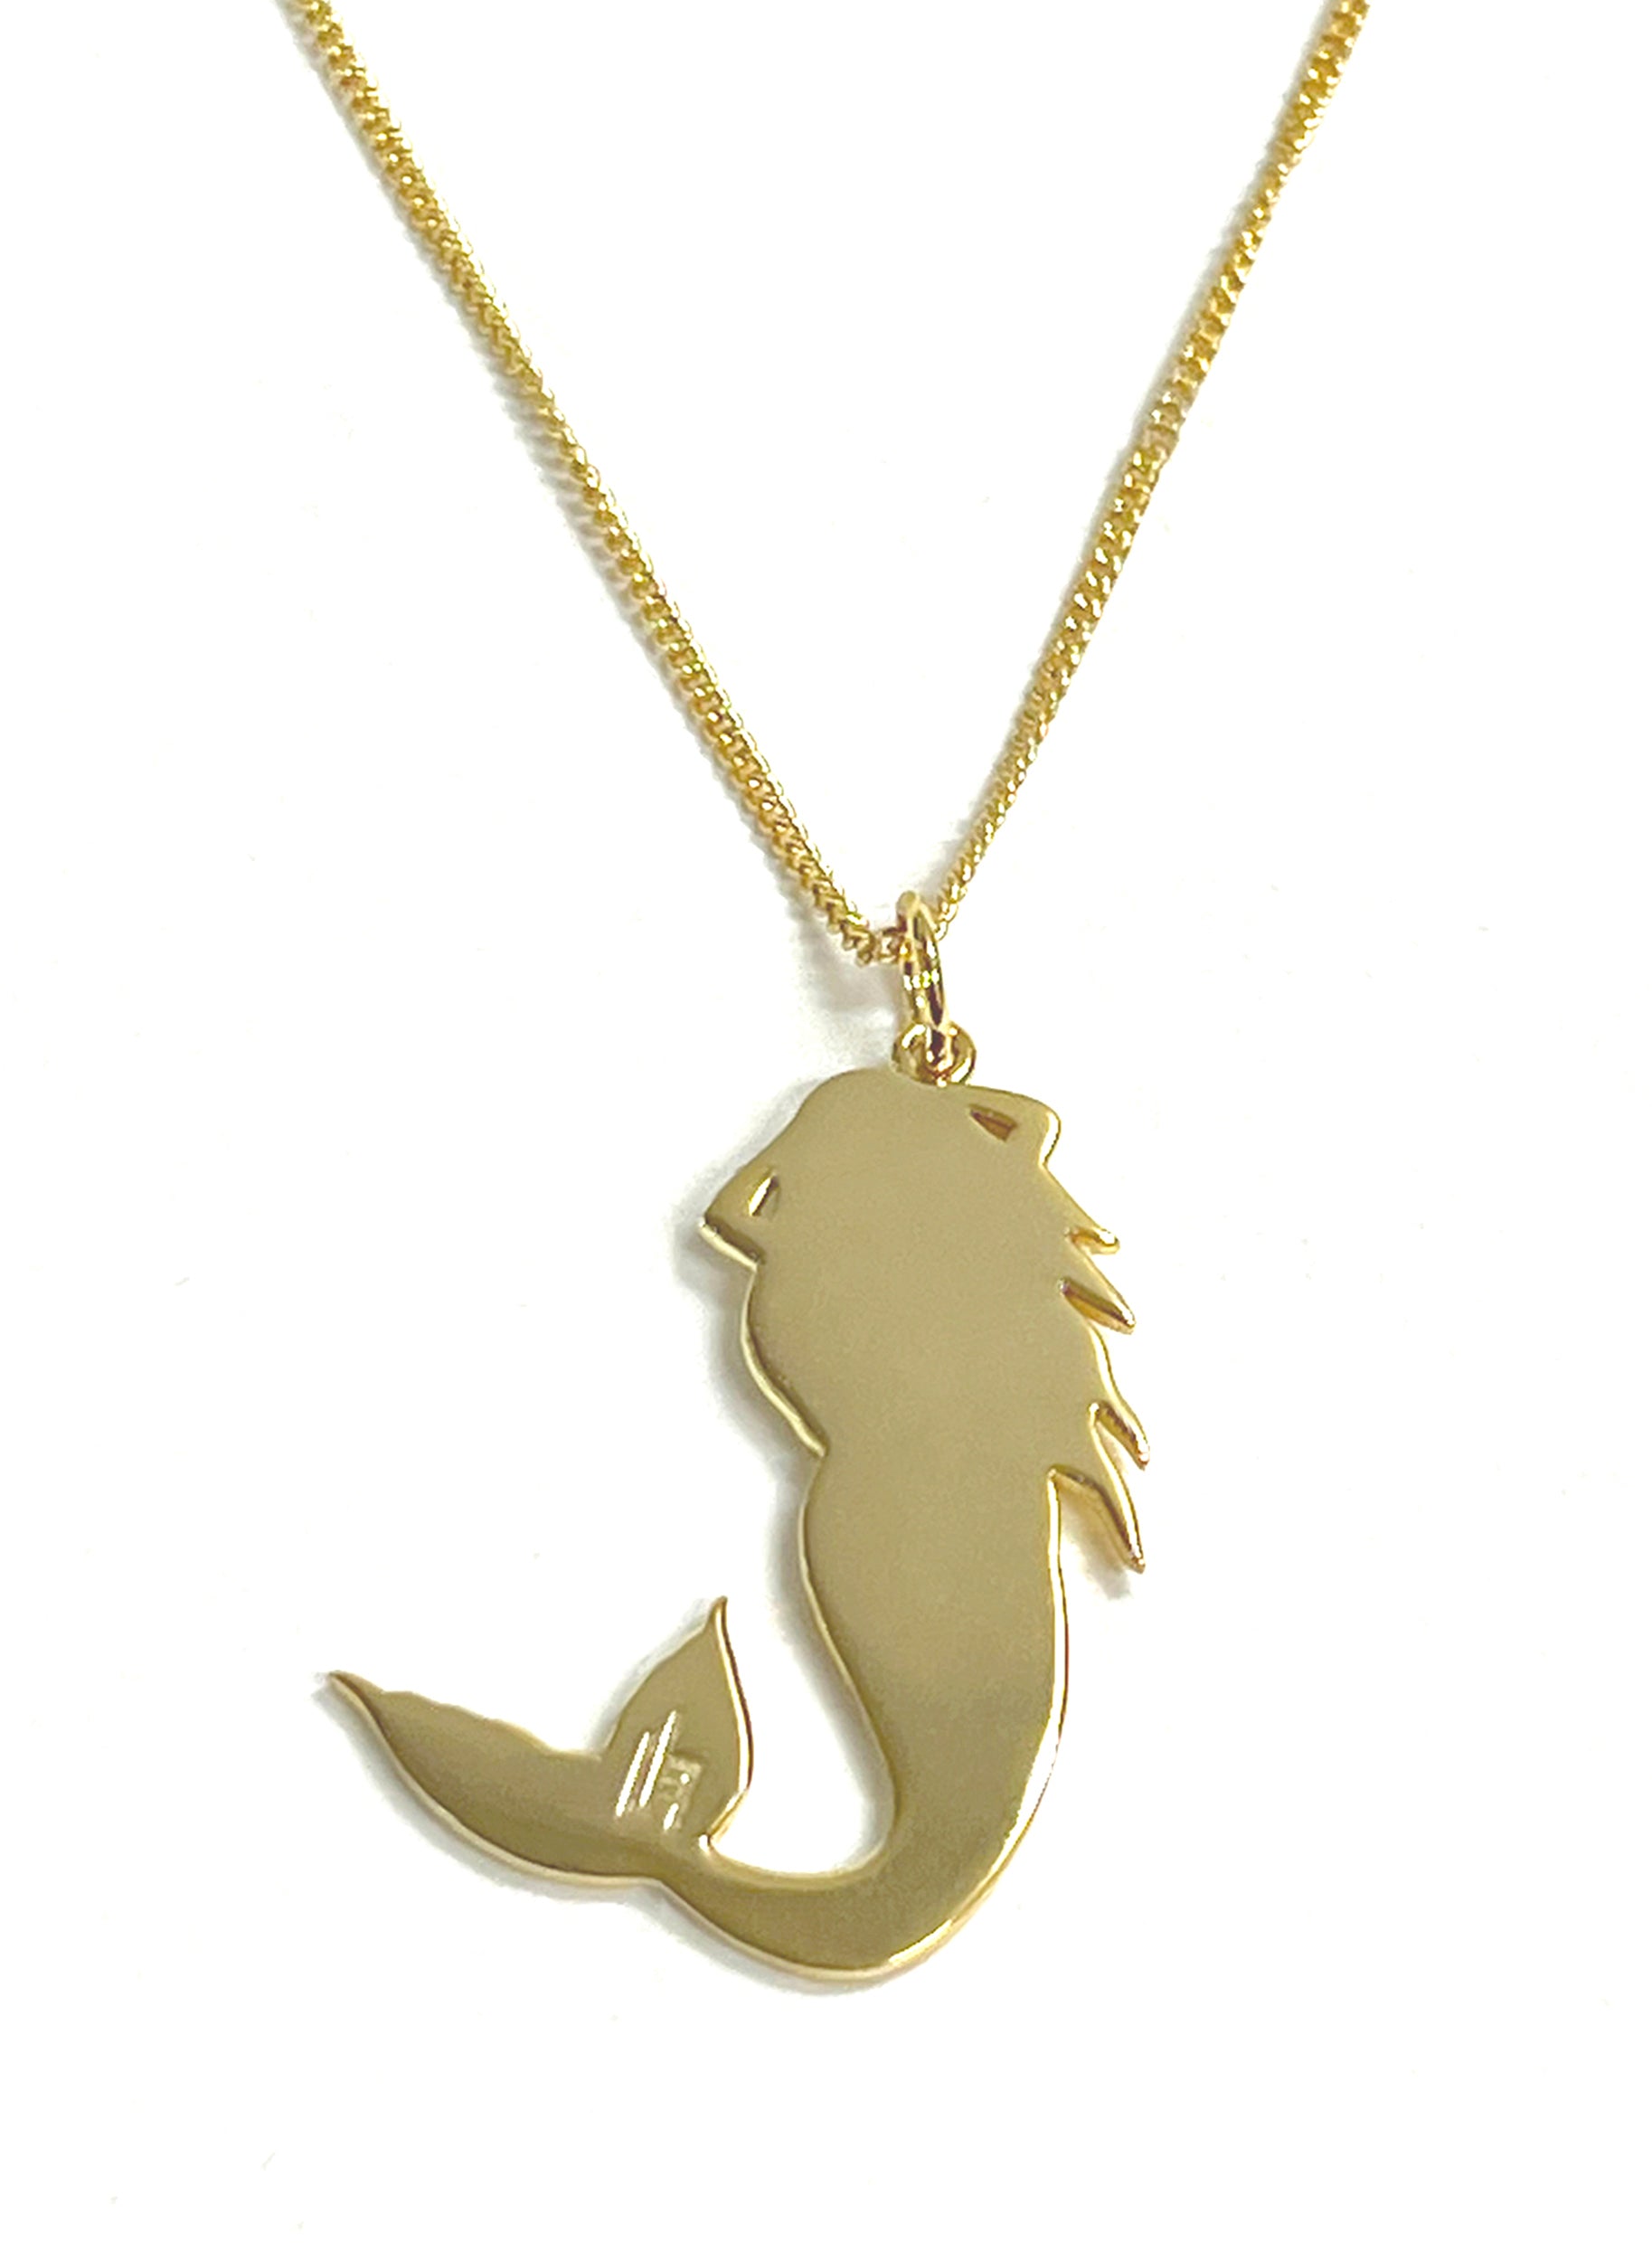 Mermaid Necklace | Joy Susan